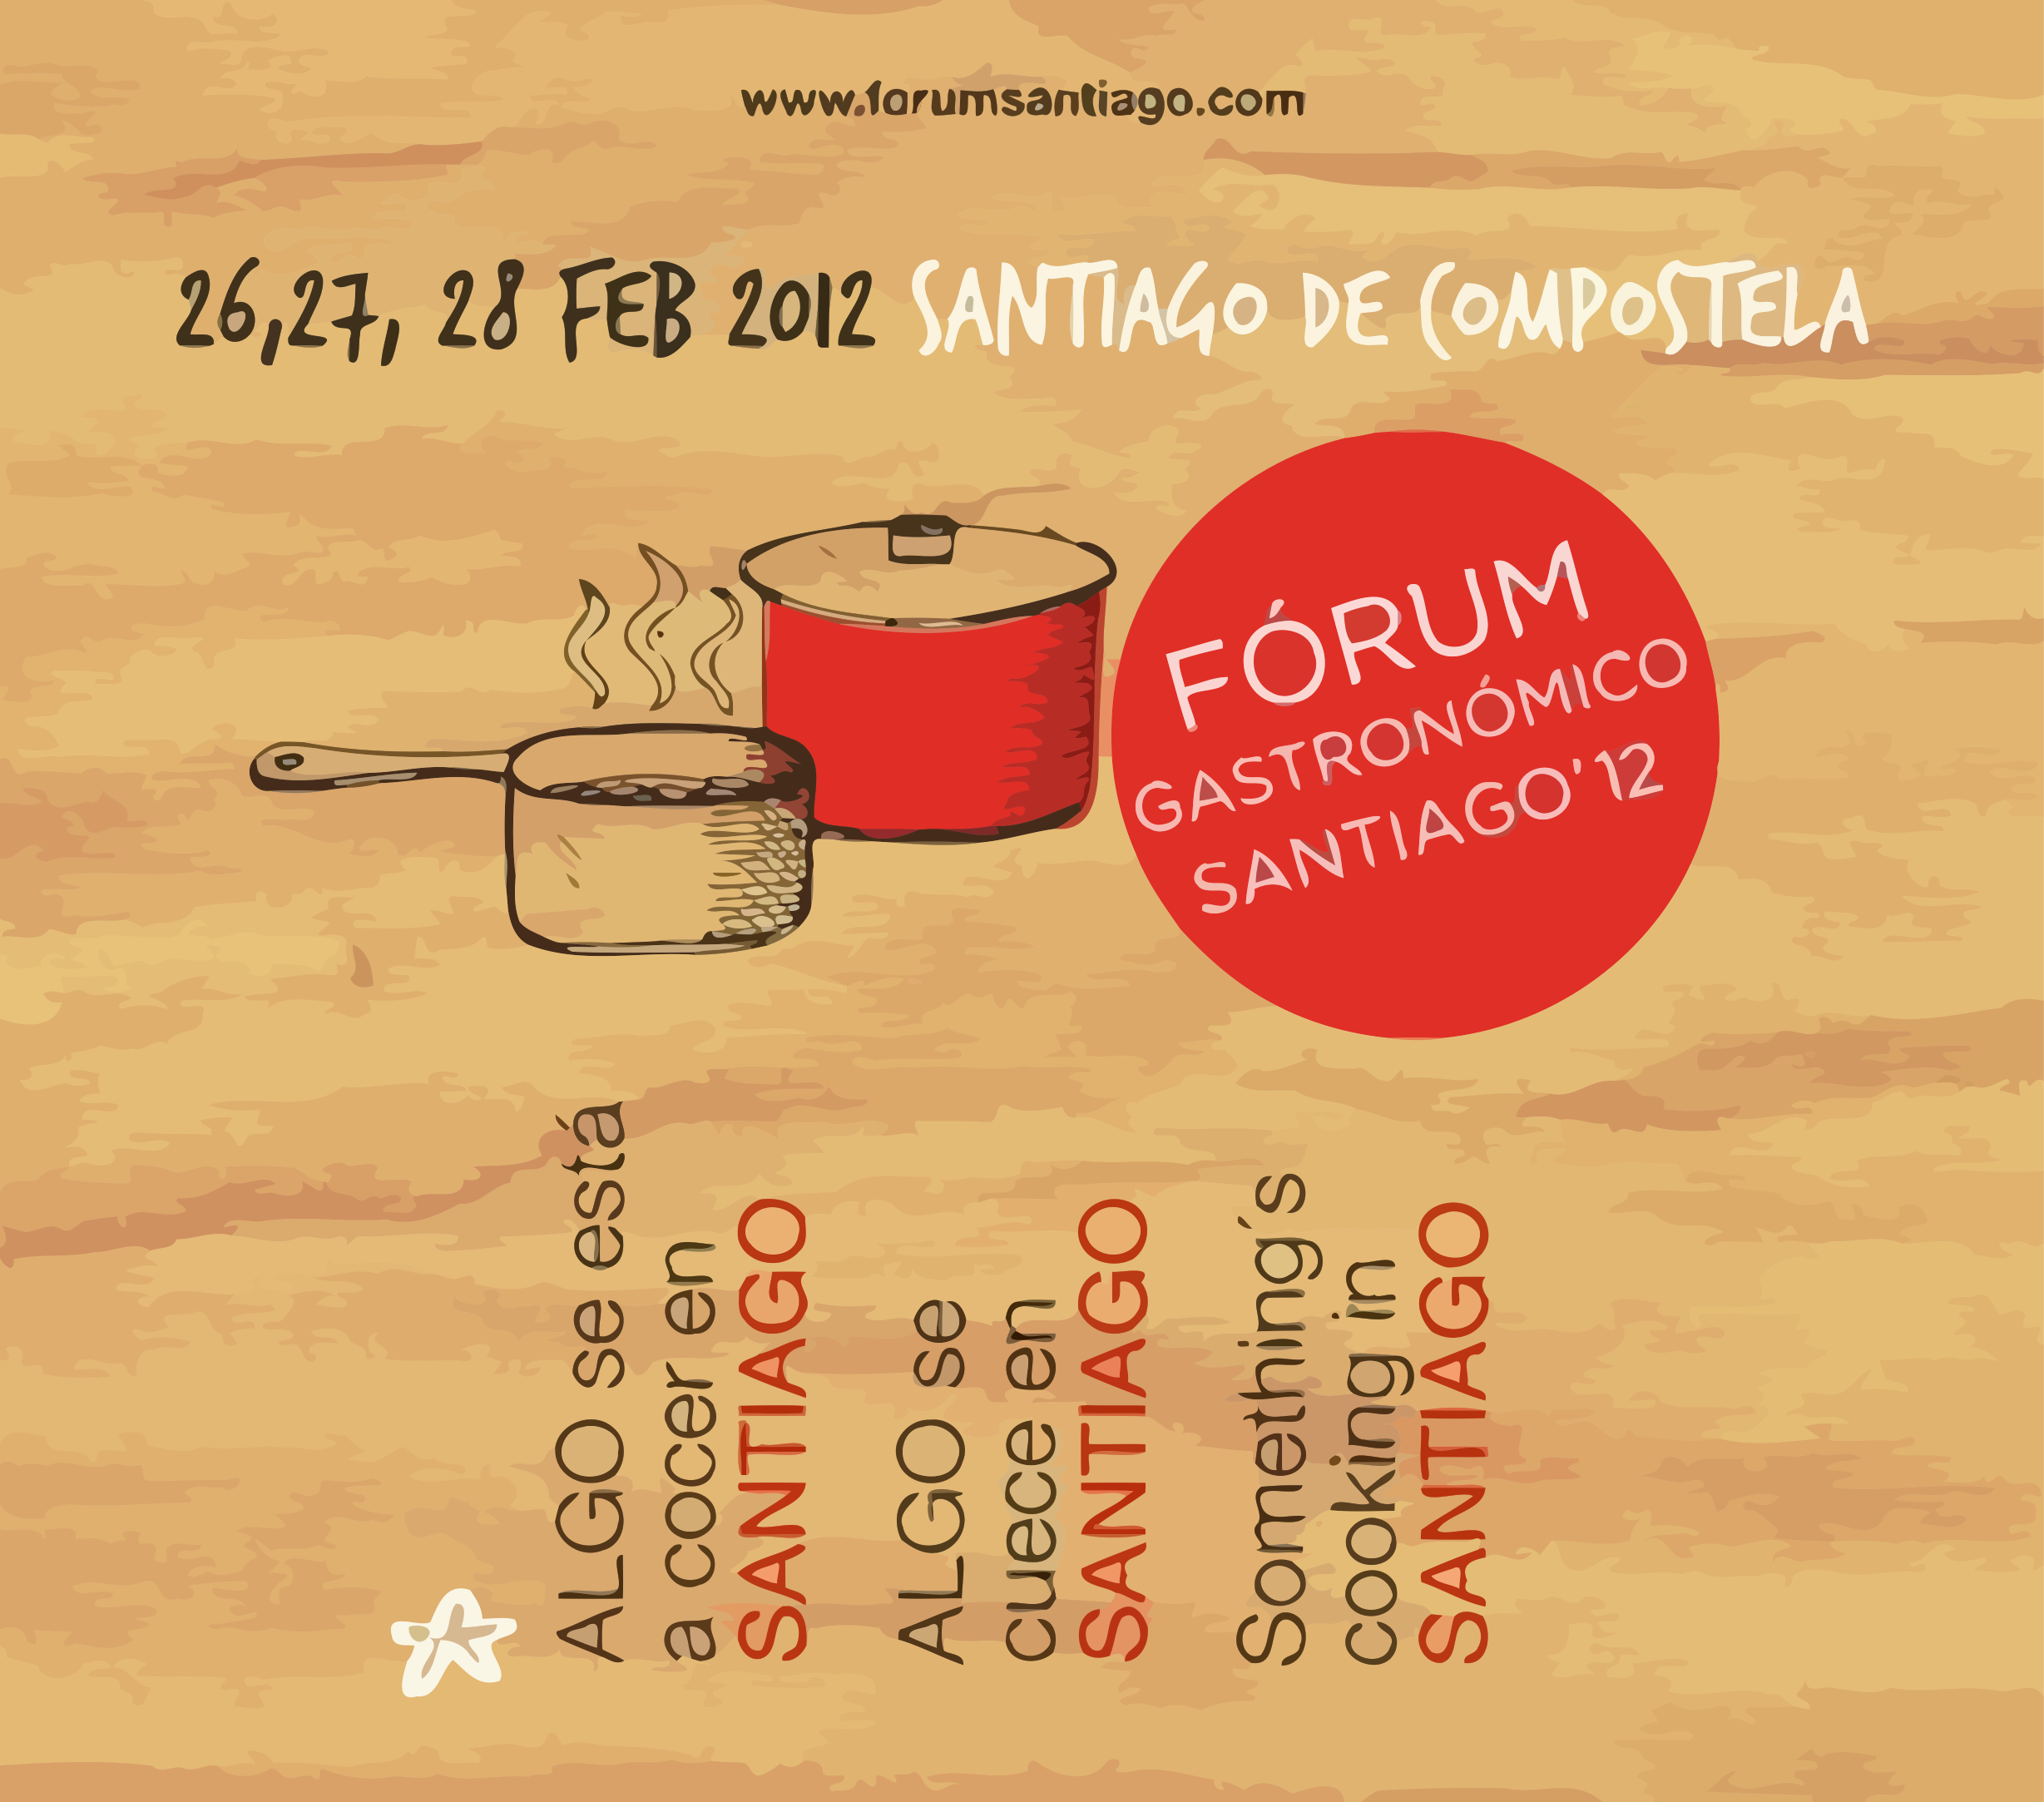 Fórum Gastronómico Santiago 2012